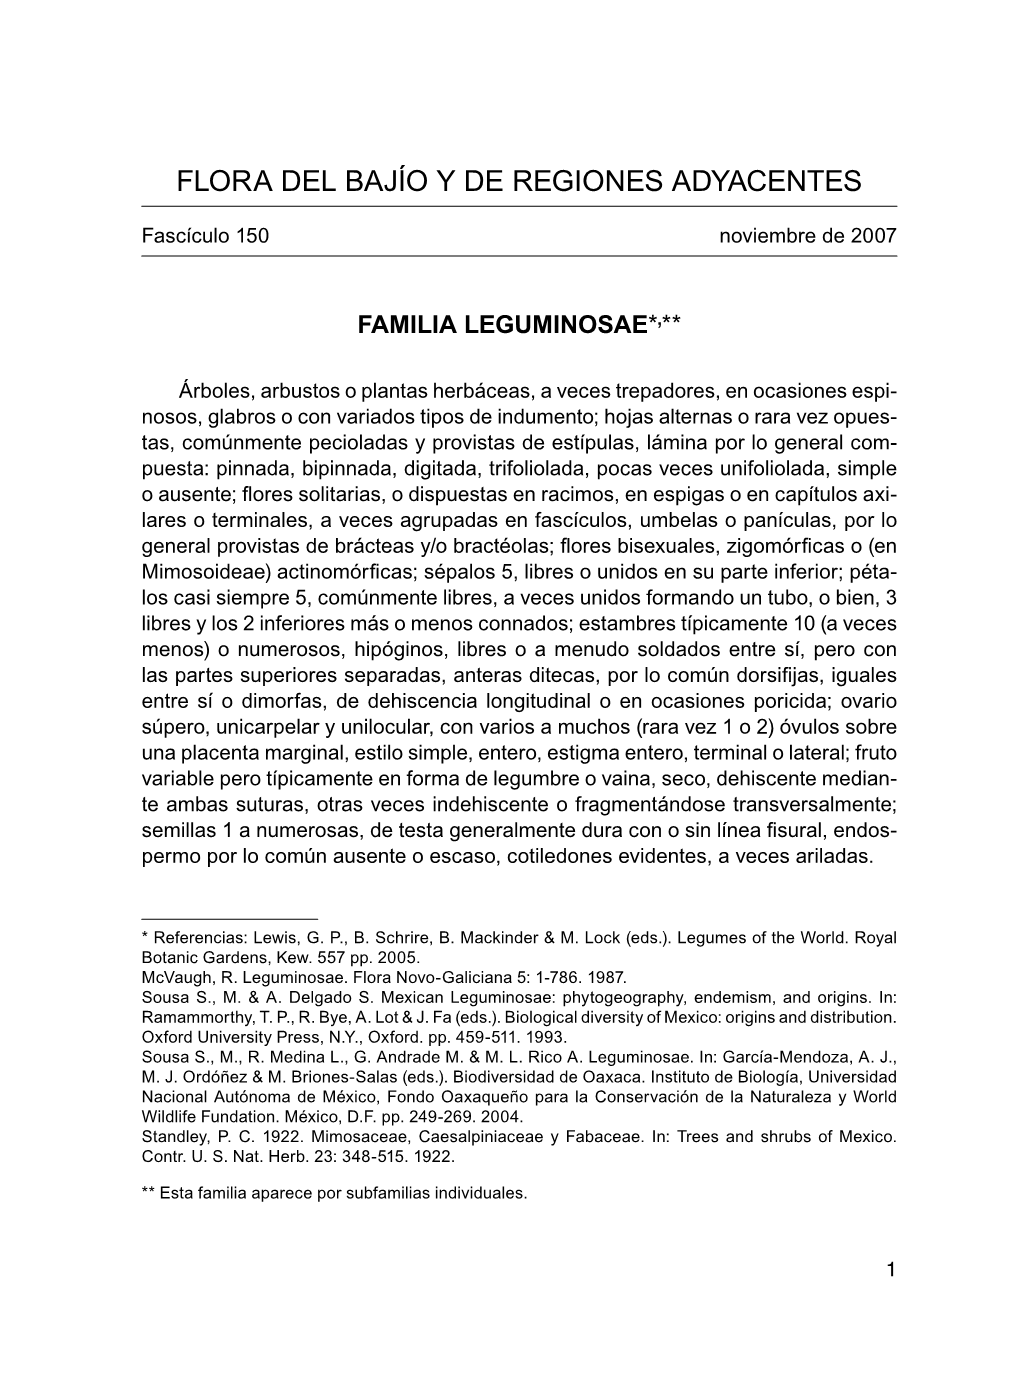 Leguminosae/Subfamilia Mimosoideae